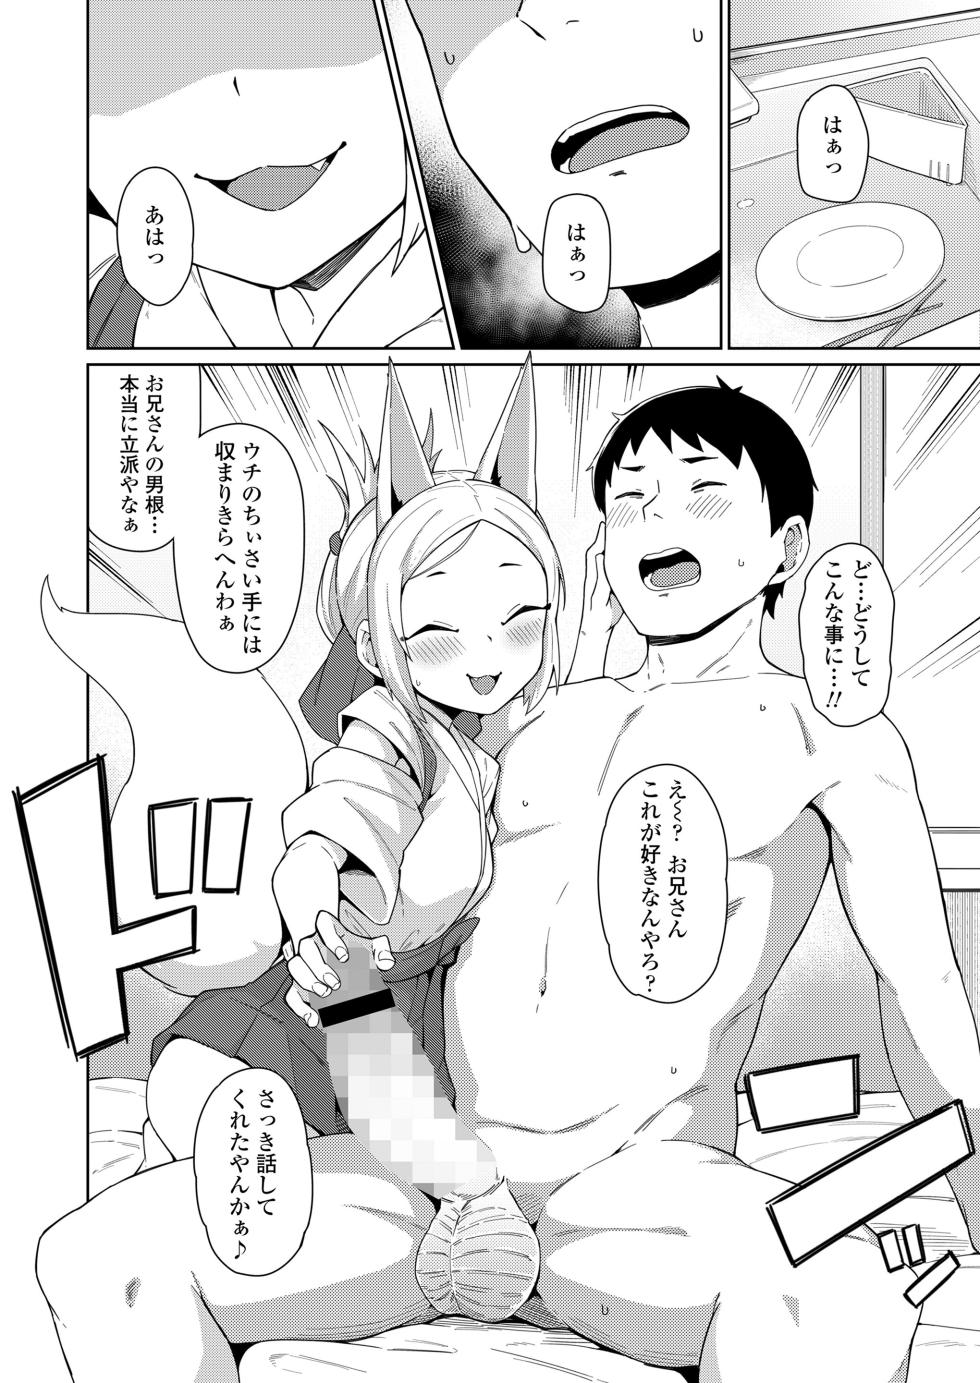 Towako 16 [Digital] - Page 32